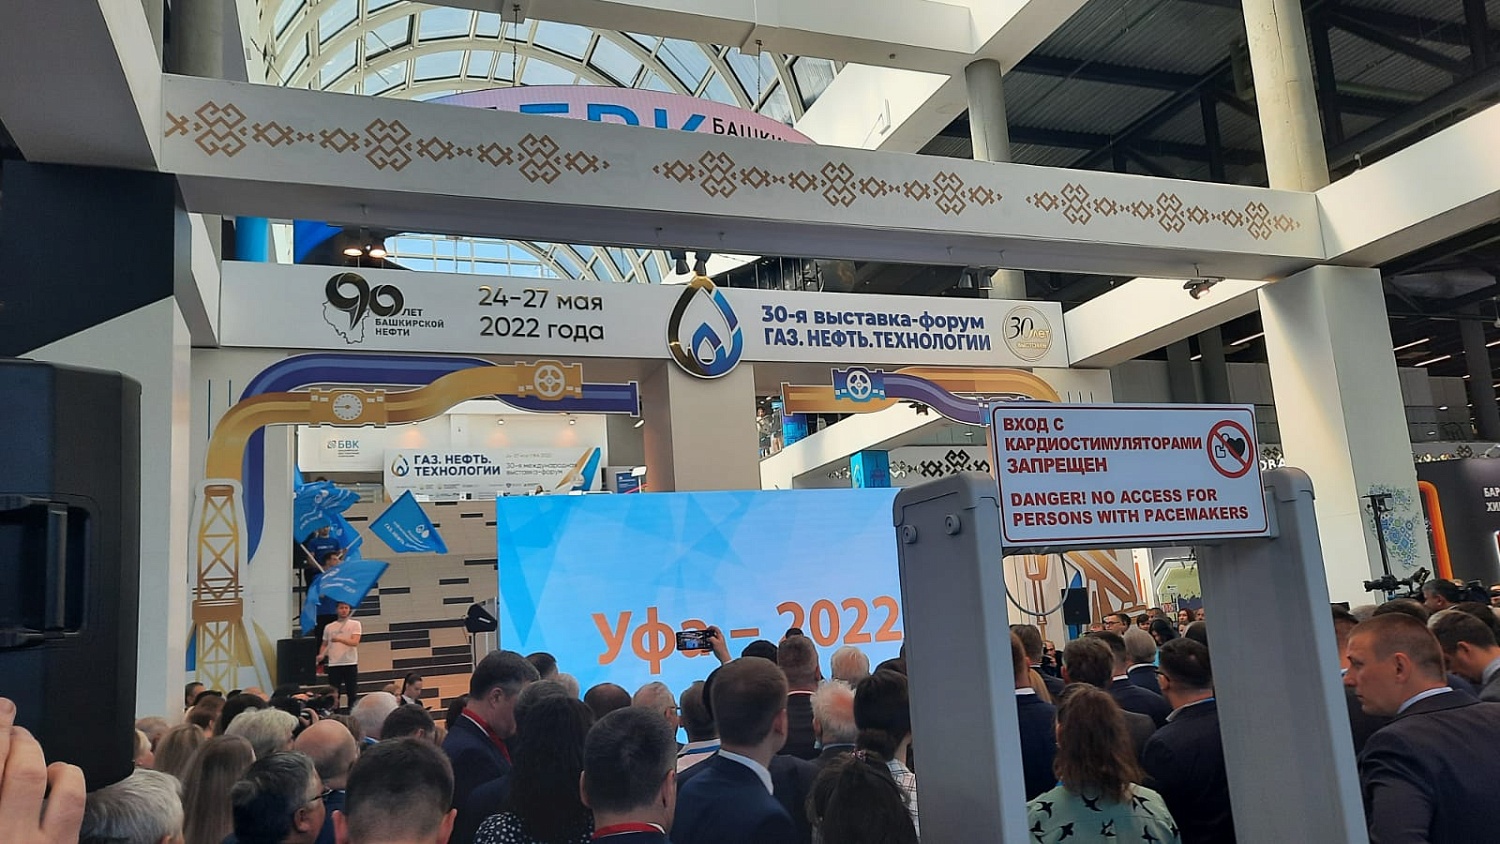 Компания ИНГК принимает участие в деловой программе выставки «Газ. Нефть. Технологии-2022», г. Уфа